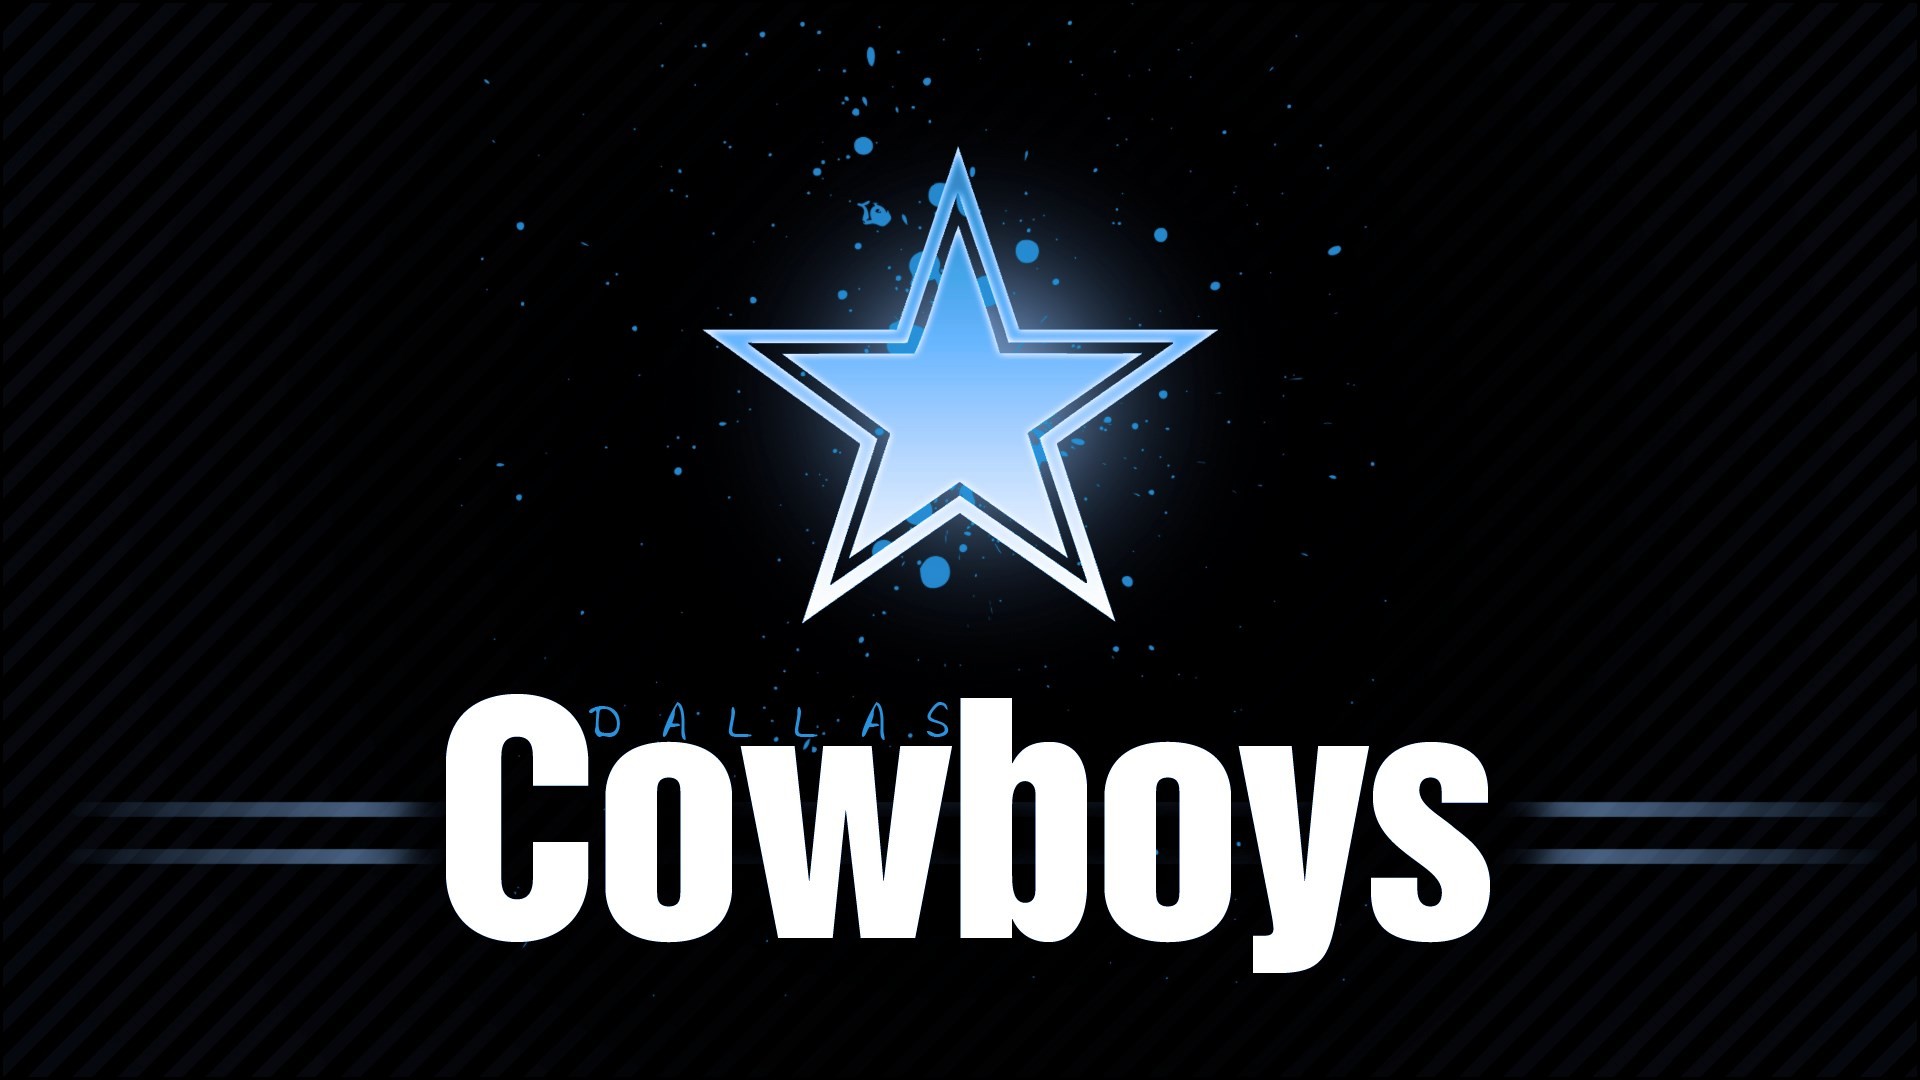 3D Dallas Cowboys Wallpaper (70+ images)